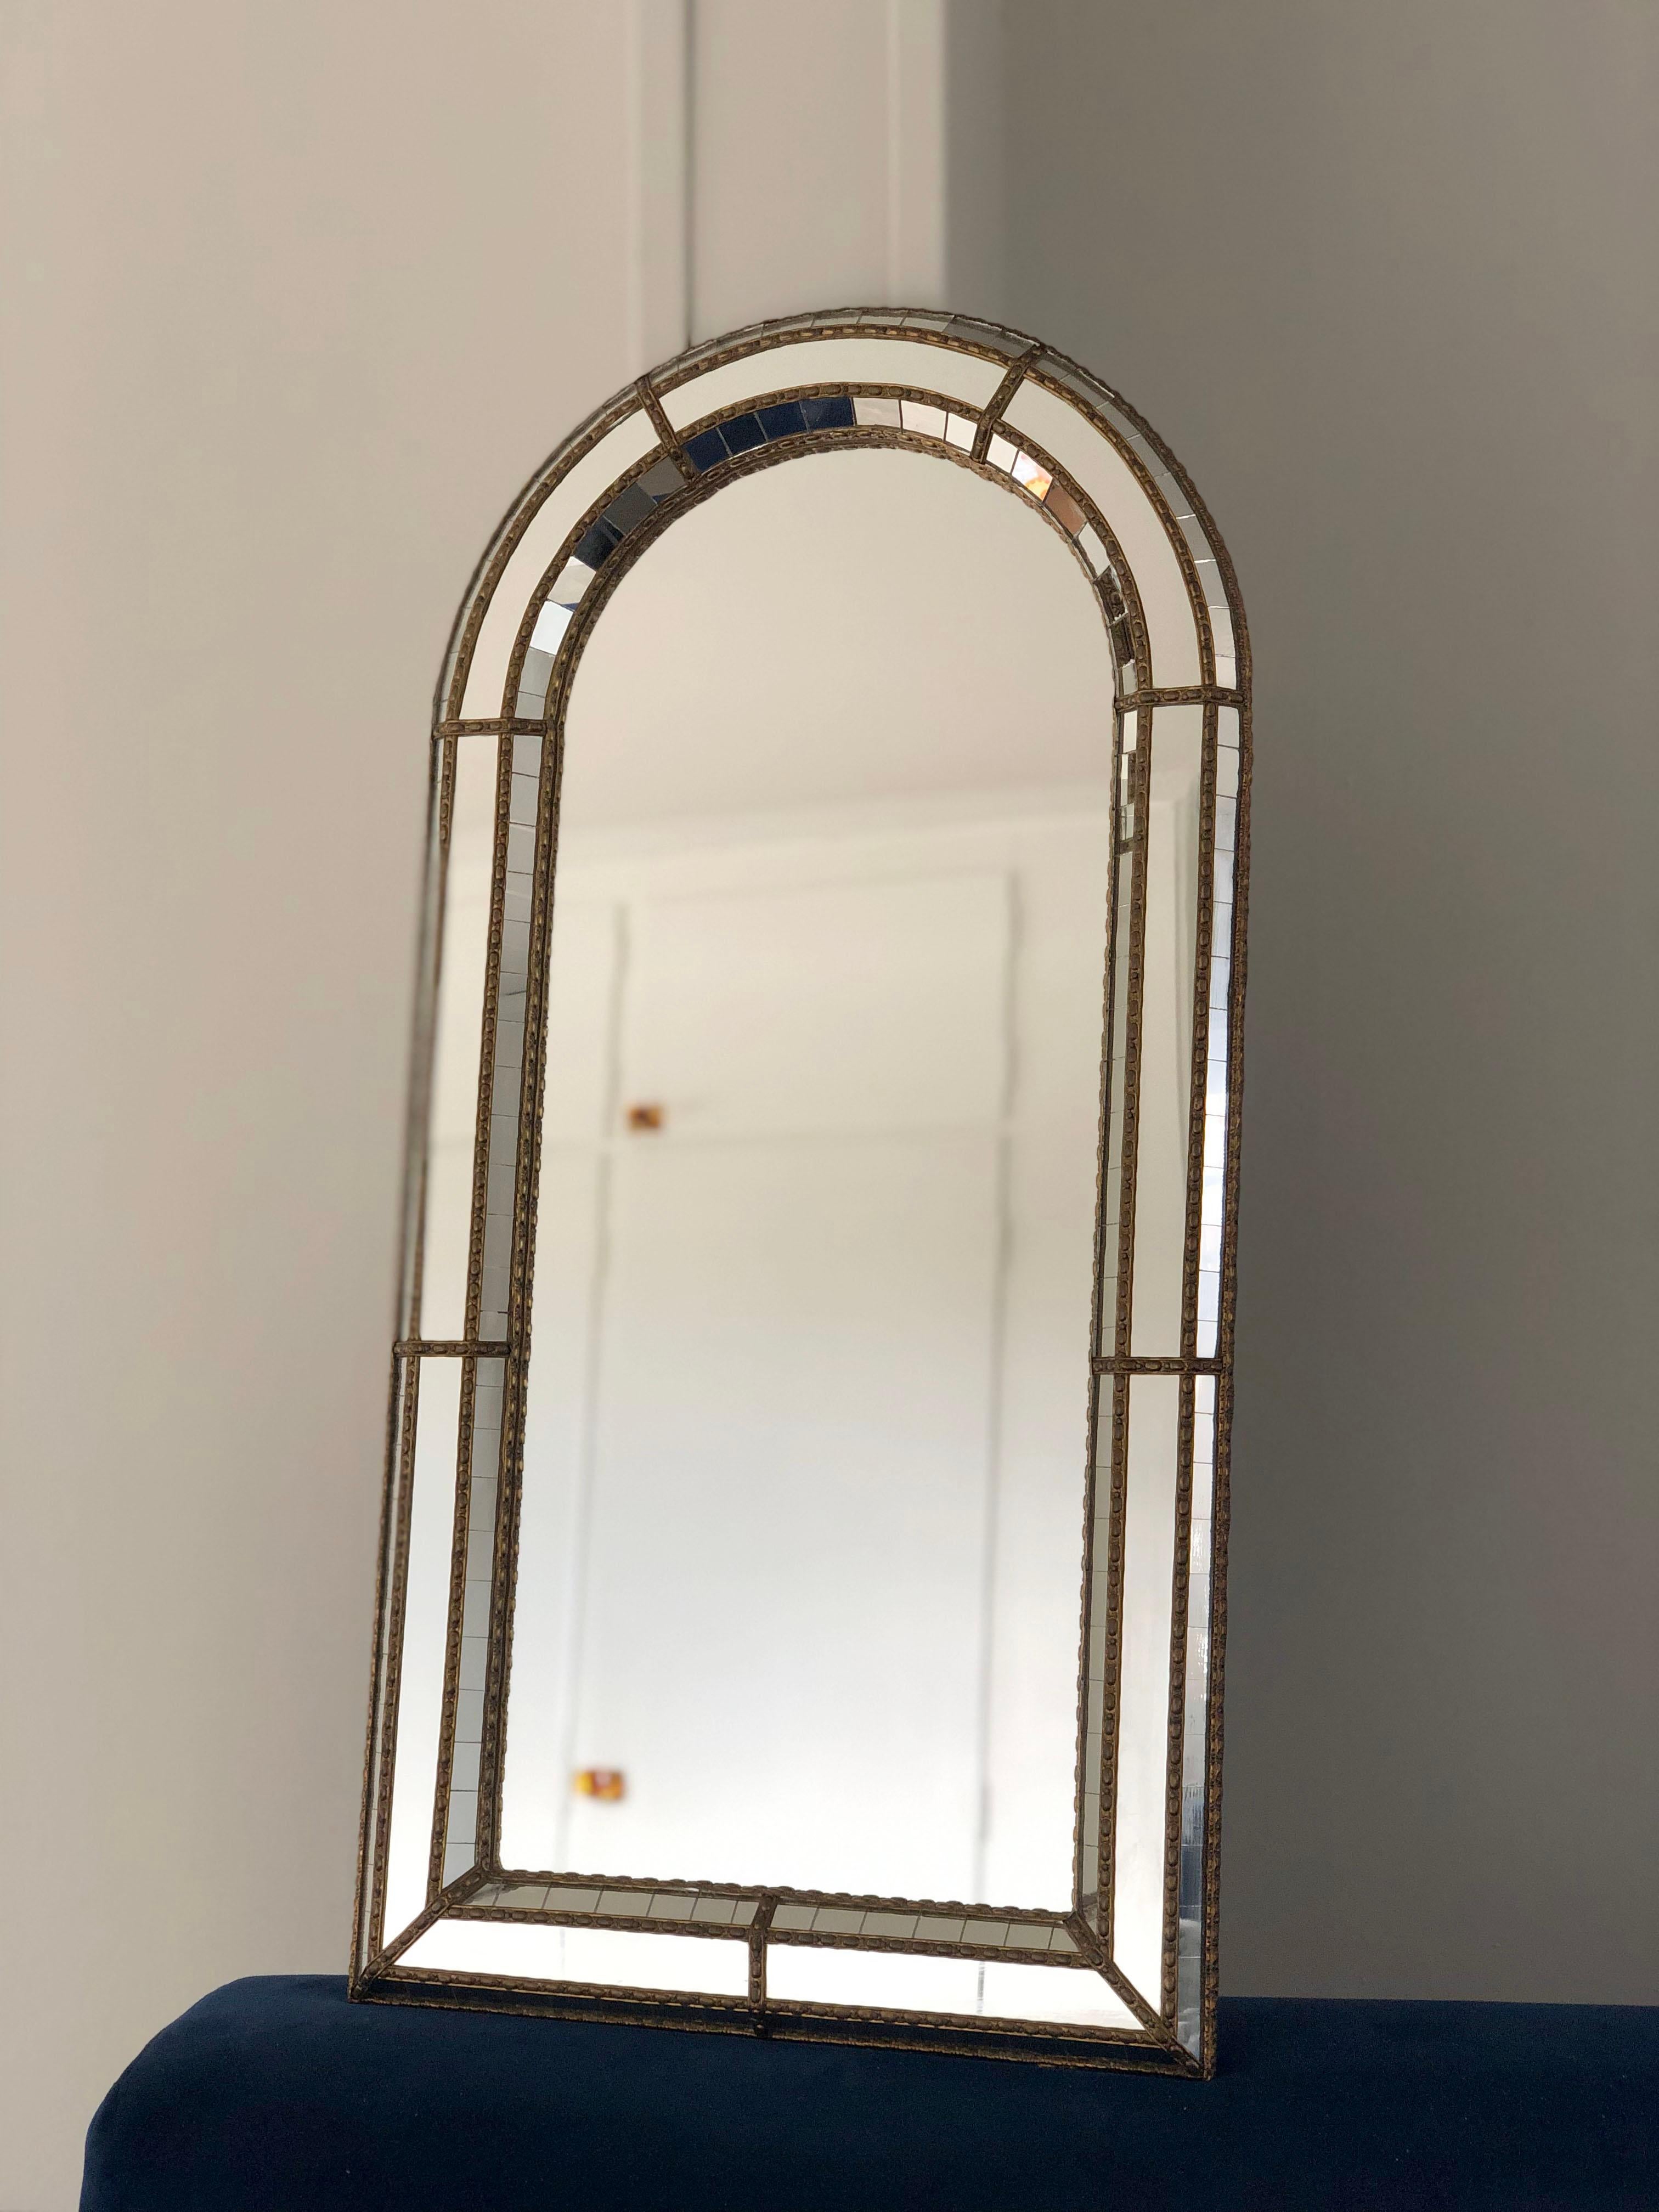 2 beaux miroirs espagnols identiques avec un cadre en verre vénitien avec une bande dorée en laiton. Le cadre est composé de petits cristaux à l'extérieur et à l'intérieur, et de cristaux plus grands dans la ligne centrale. La bande de laiton